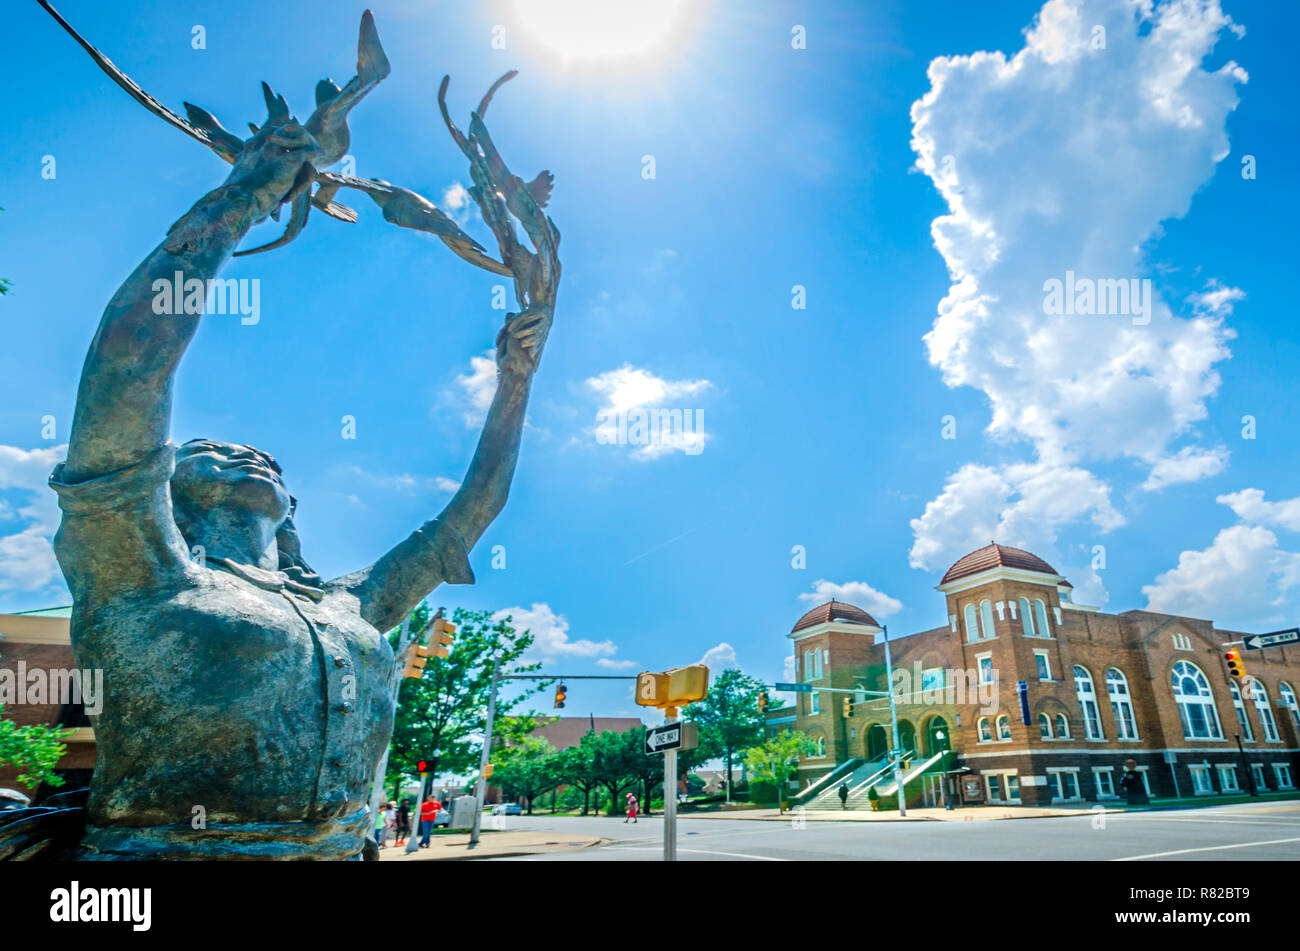 Une statue d'une fille la libération de colombes se trouve au coin de Kelly Ingram Park, près de 16e St. église Baptiste, le 12 juillet 2015, à Birmingham, Alabama. Banque D'Images